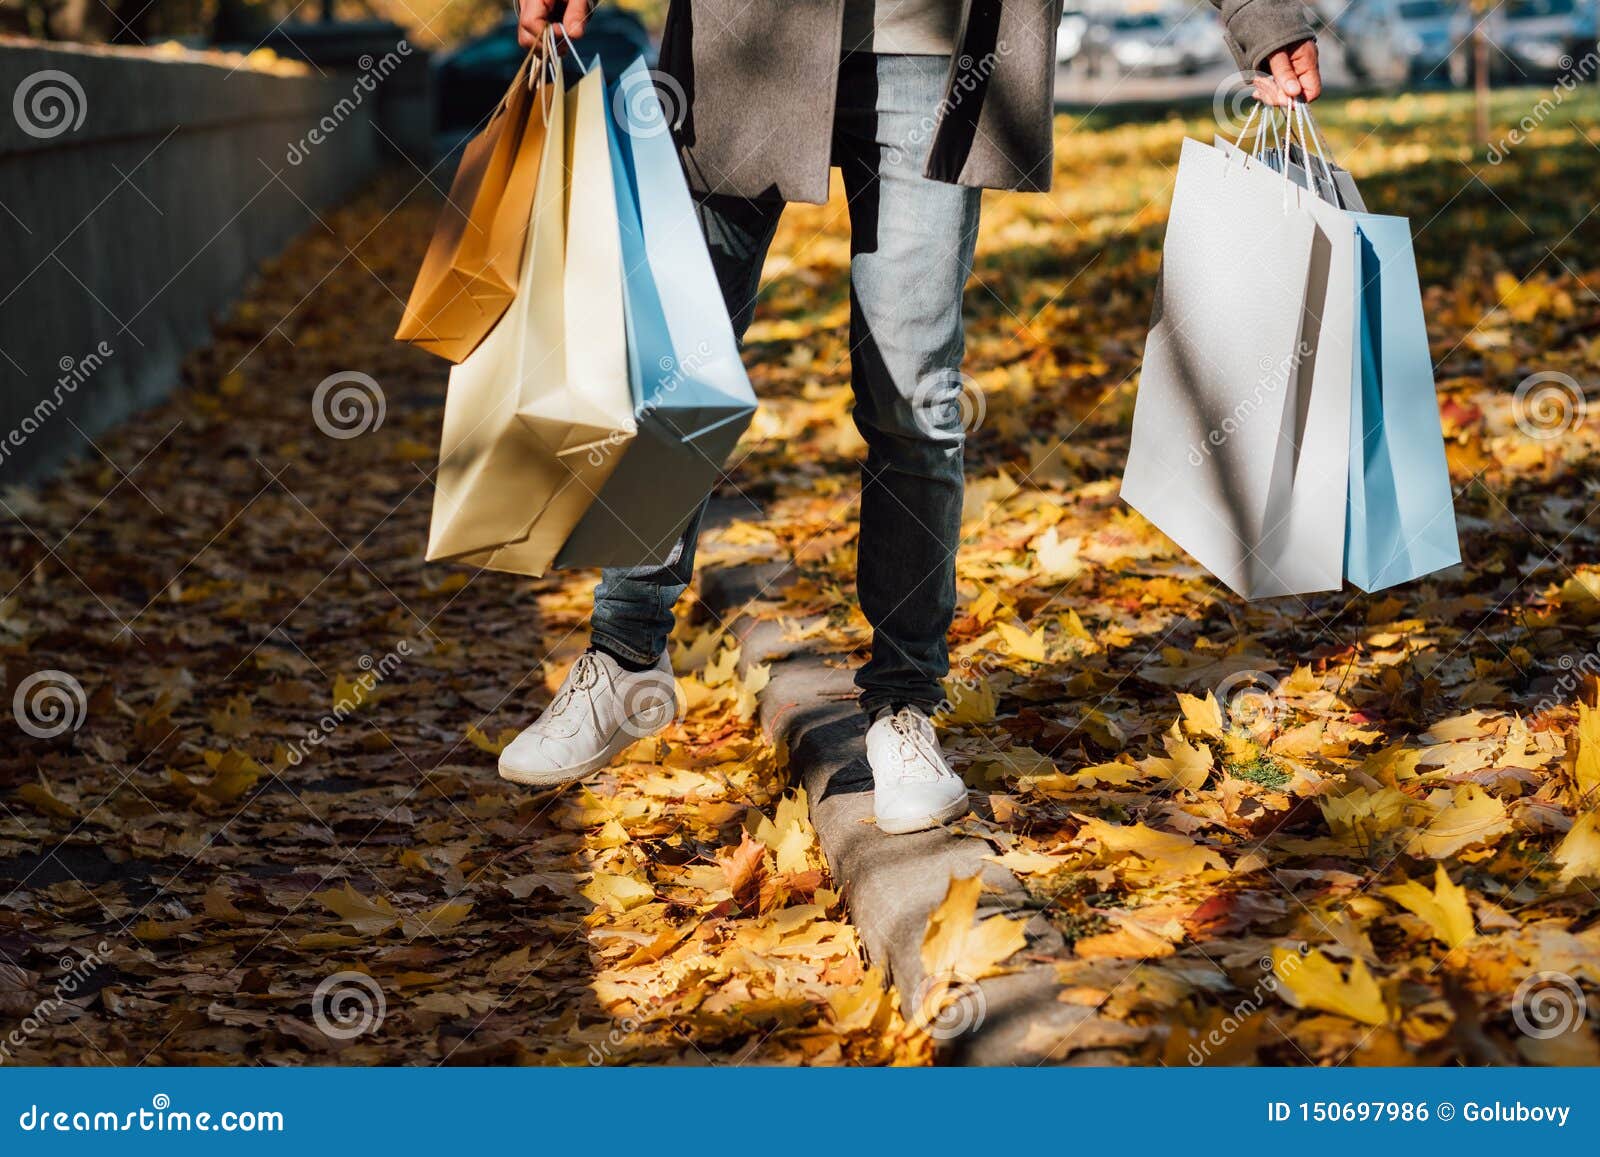 Jesieni zabawy mężczyzny toreb na zakupy spadek opuszcza chodniczek. Jesieni zabawa Cropped strzał mężczyzny odprowadzenie z torbami na zakupy, cieszy się sezon jesiennego z żółtymi liśćmi zakrywa chodniczek